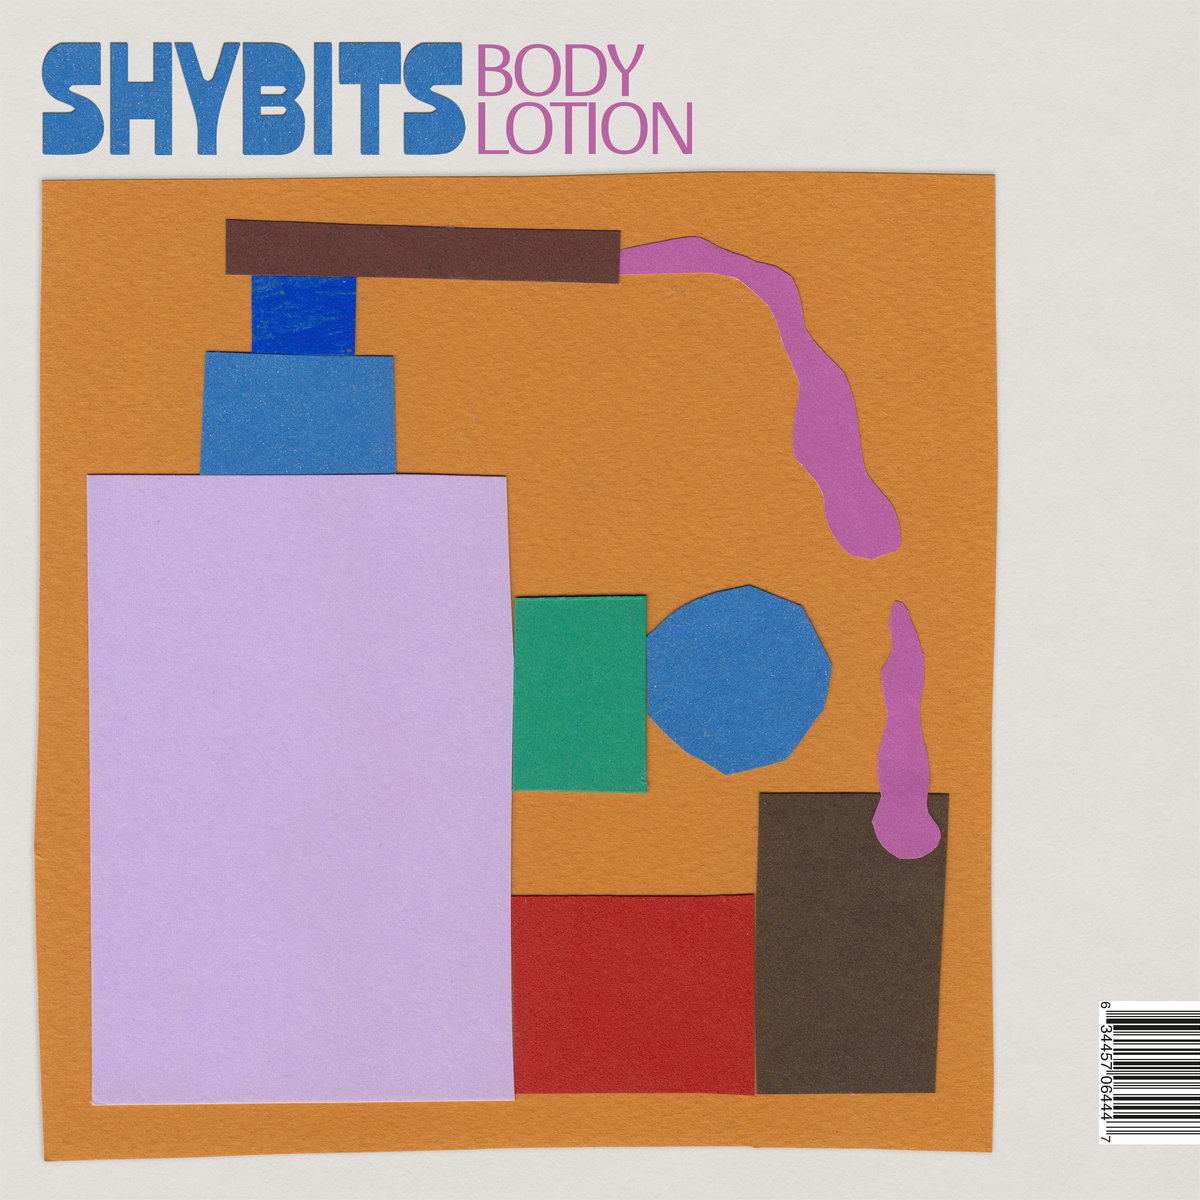 Shybits "Body Lotion" LP